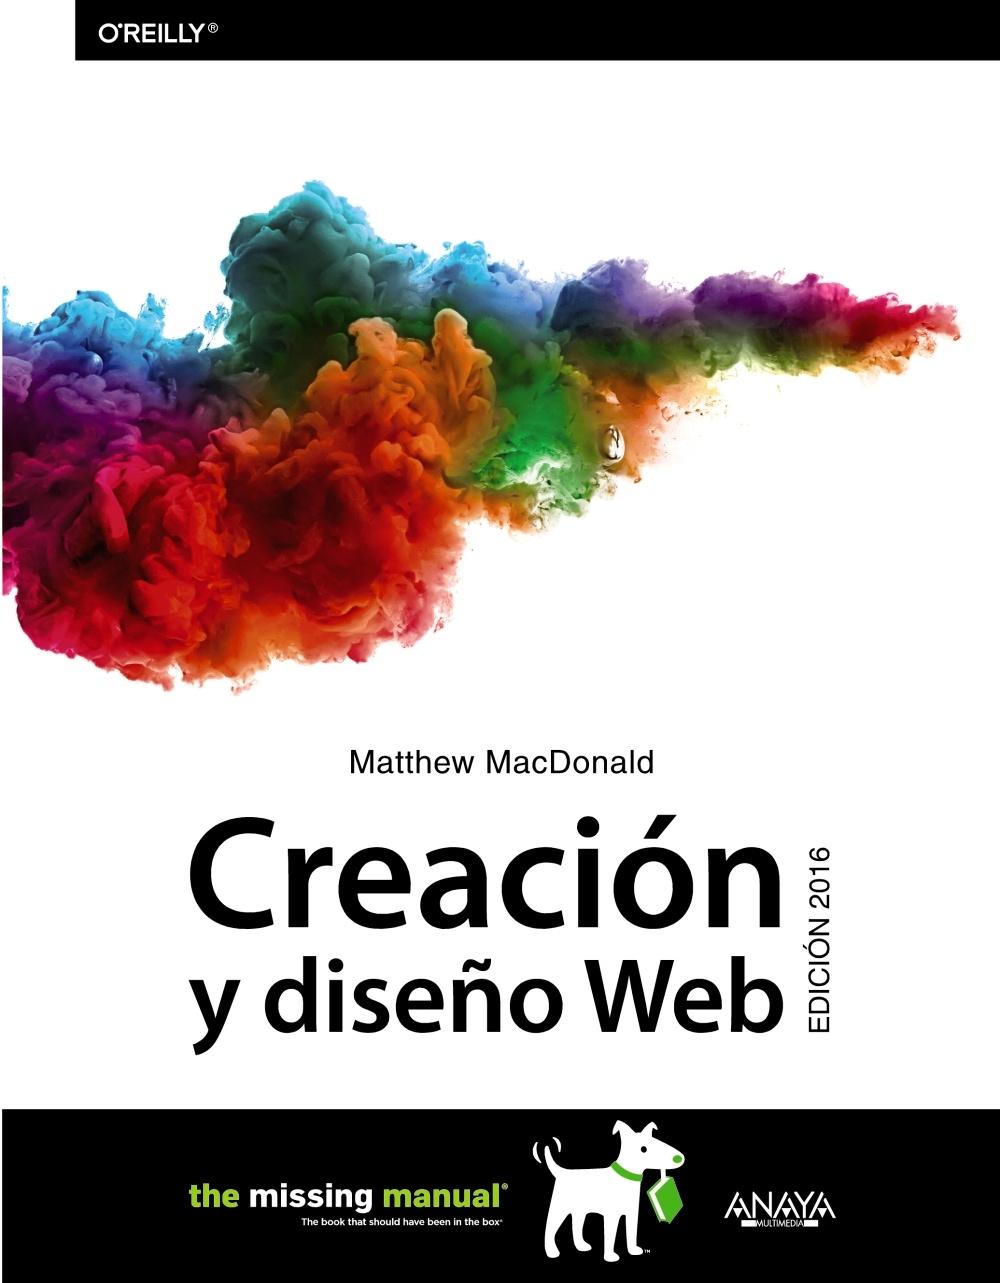 CREACION Y DISEÑO WEB. 2016. 